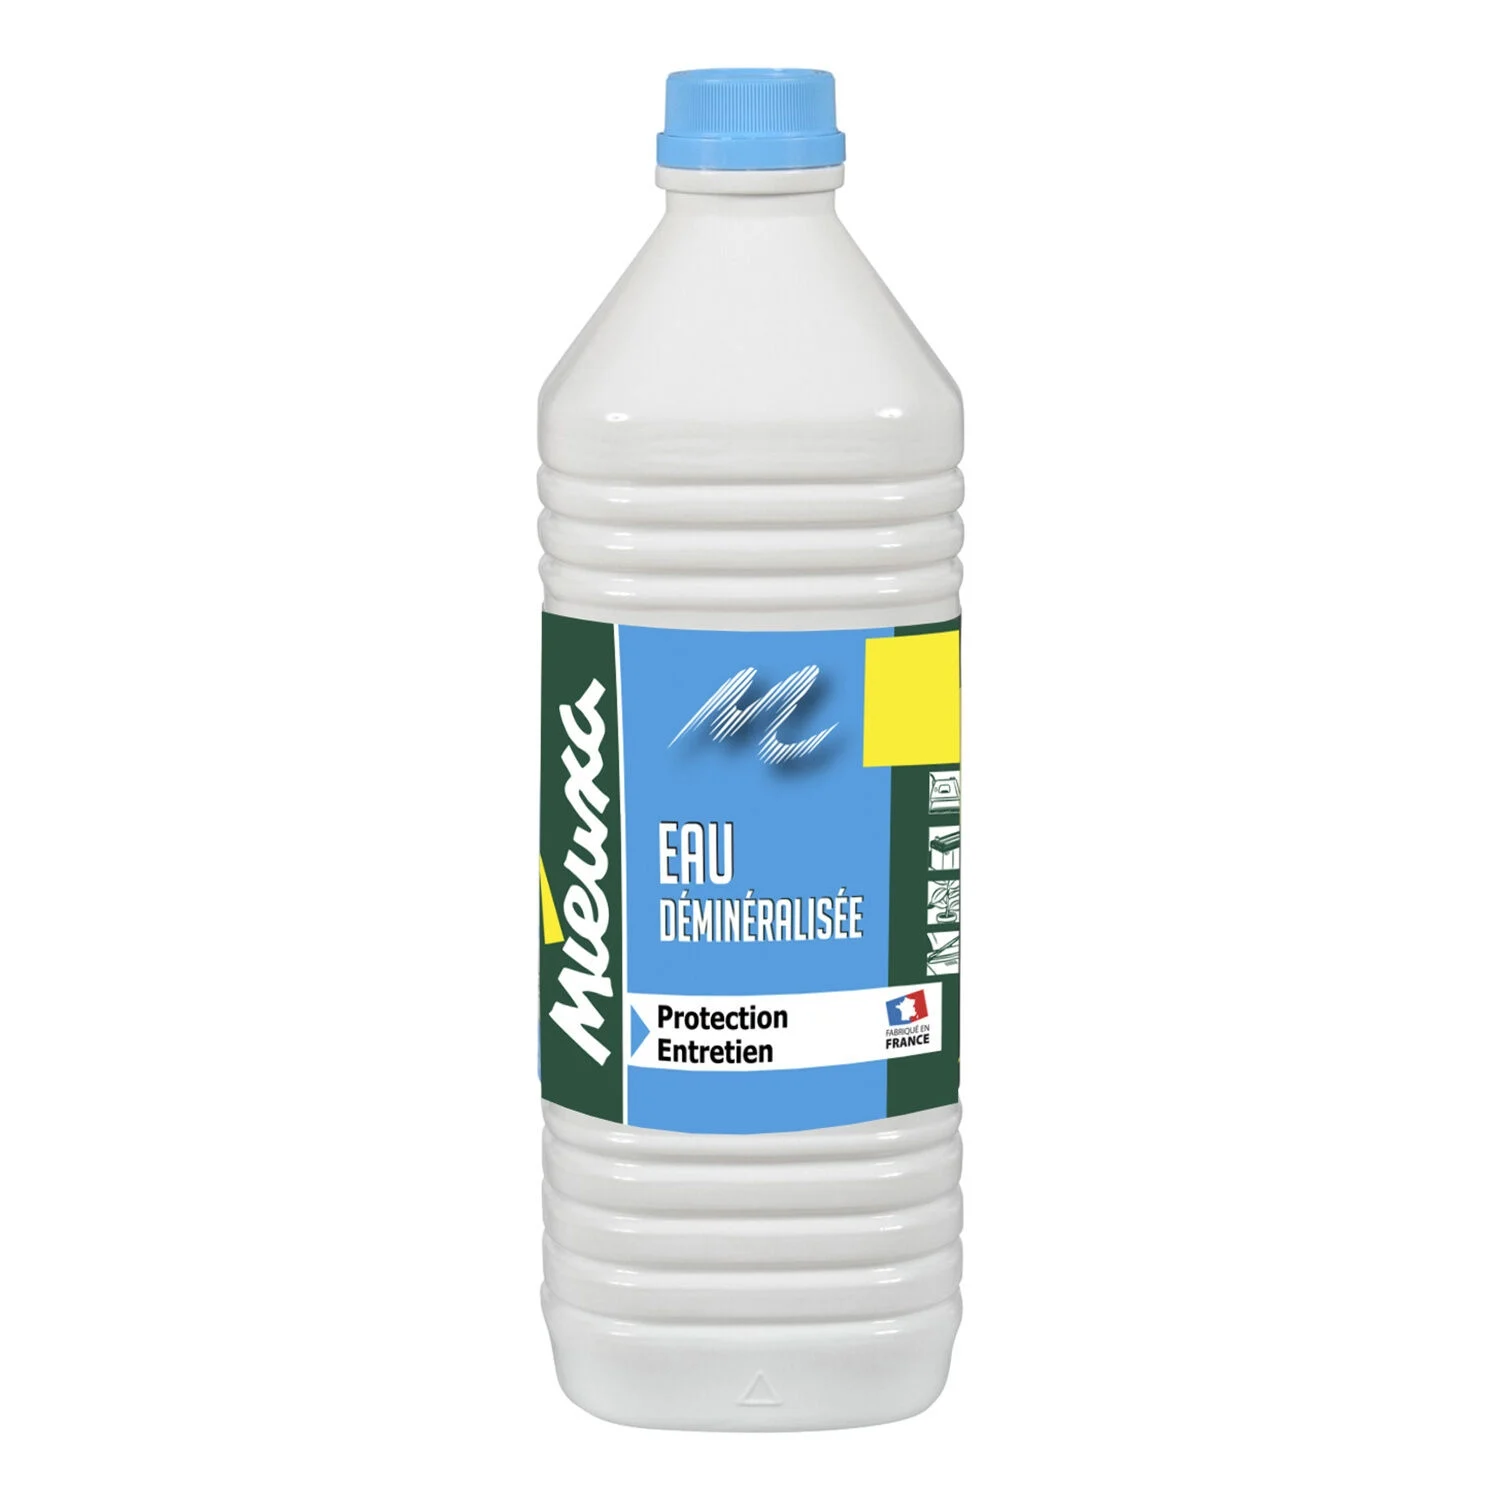 Demineralisierter Wasserschutz, Wartung 1 Liter - Mieuxa